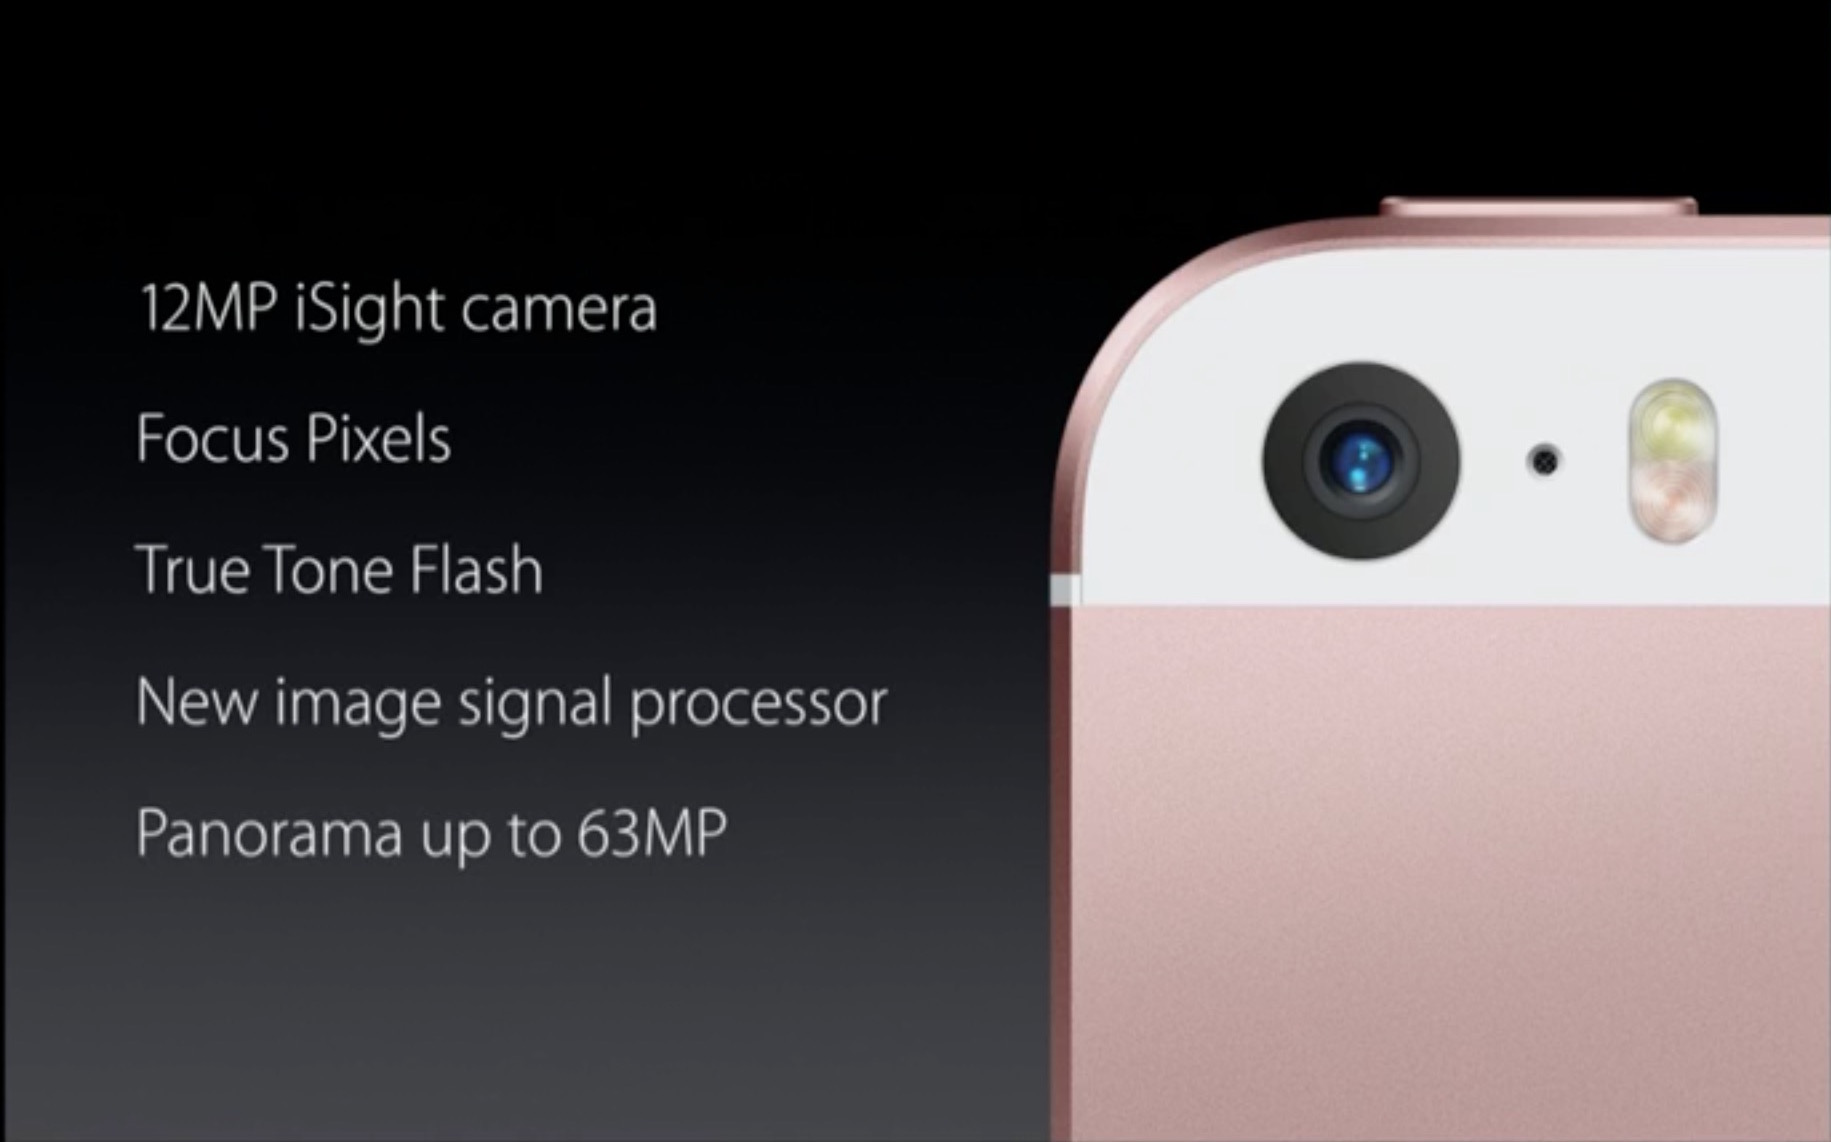 iPhone SEは3月31日発売。史上最強の4インチモデルが登場